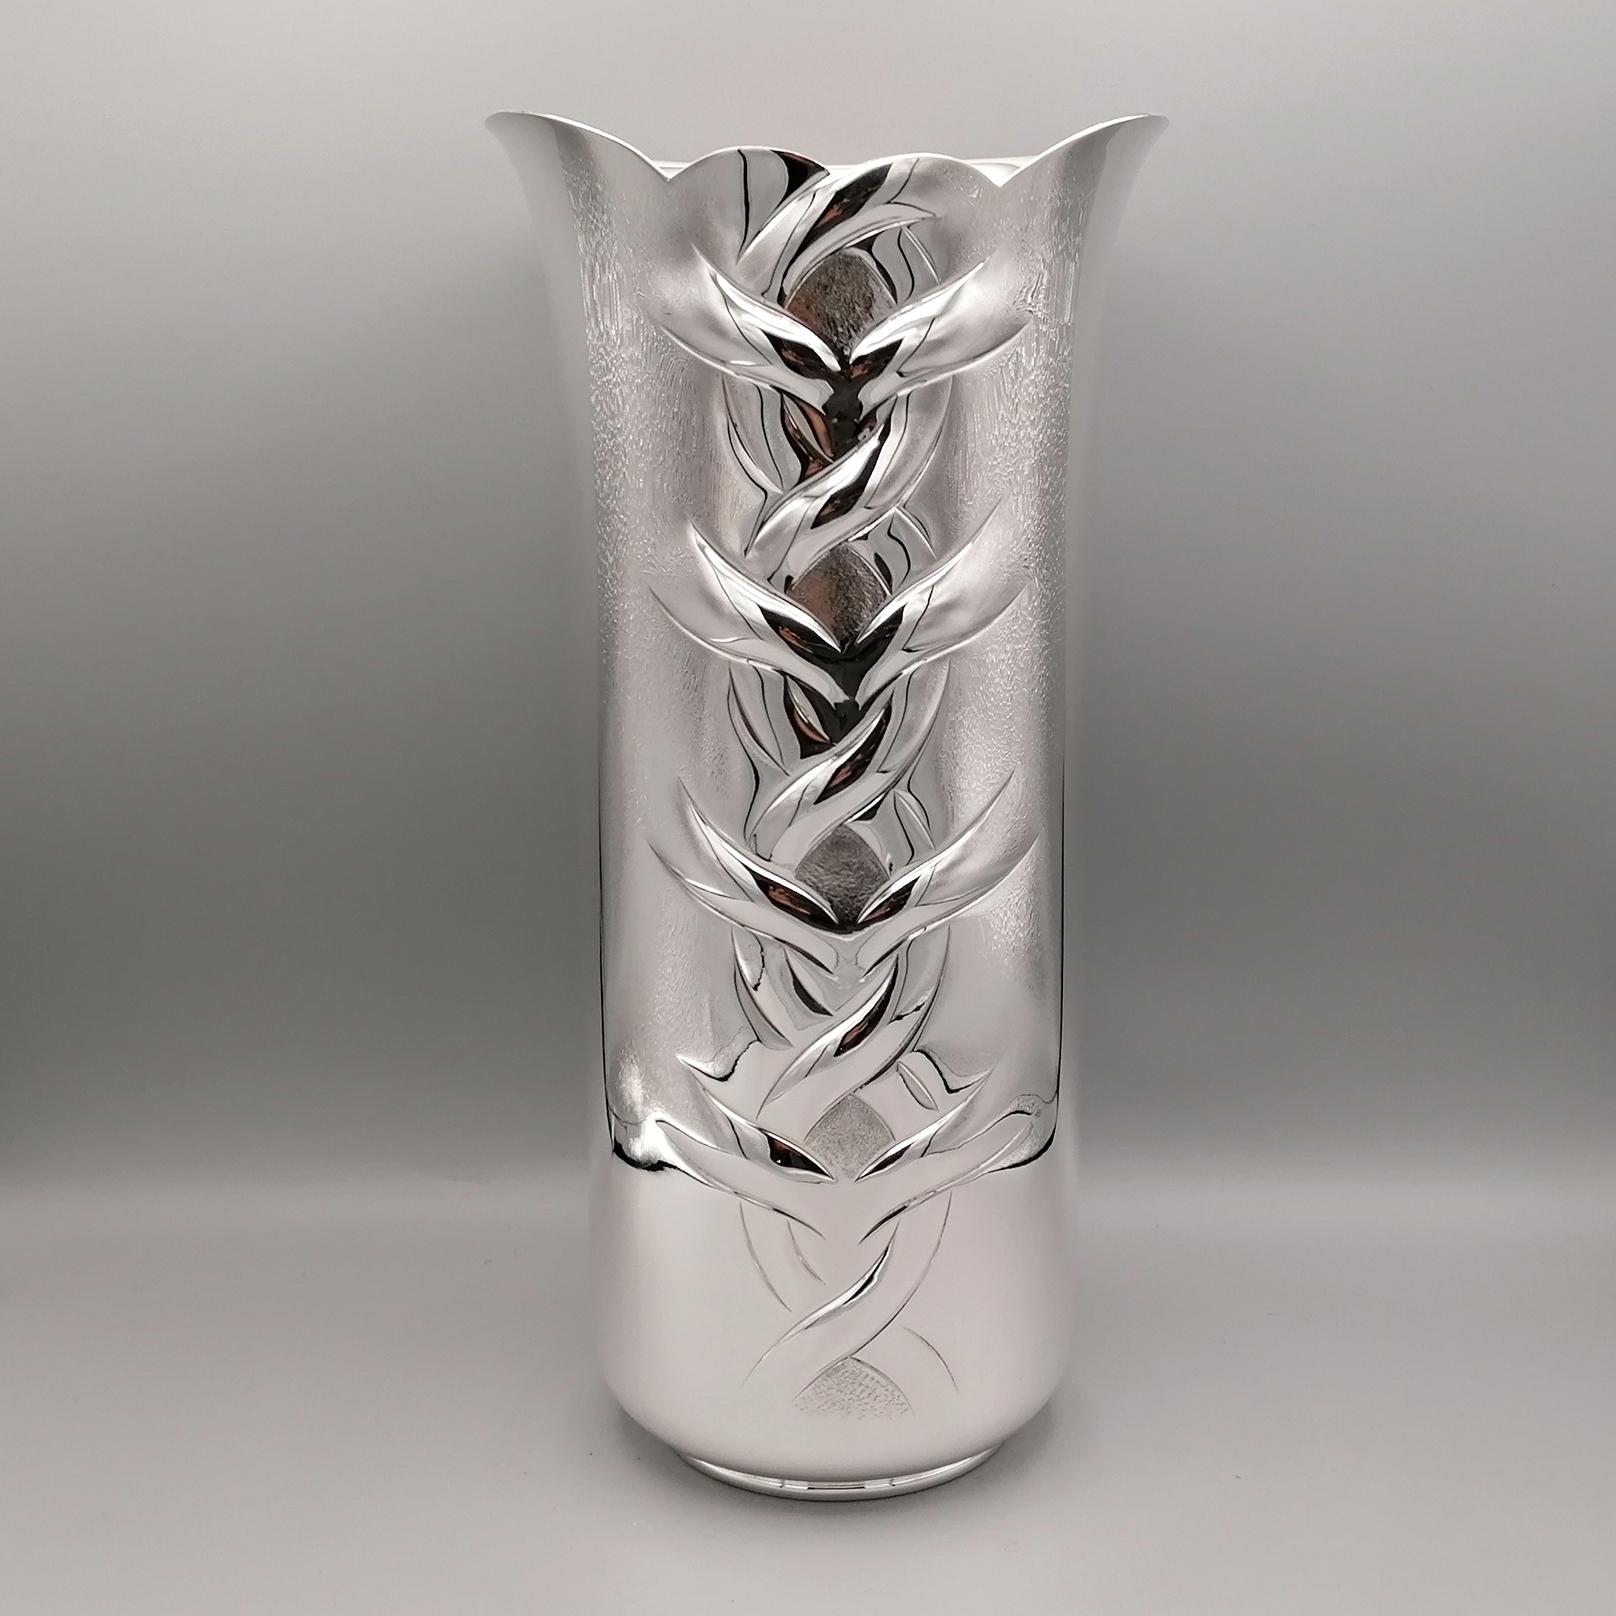 Vase en argent sterling entièrement fait à la main.
La structure du corps est cylindrique et s'élargit légèrement dans la partie supérieure, appelée l'embouchure du vase.
Le vase est lisse et brillant et se caractérise par un surplomb central et